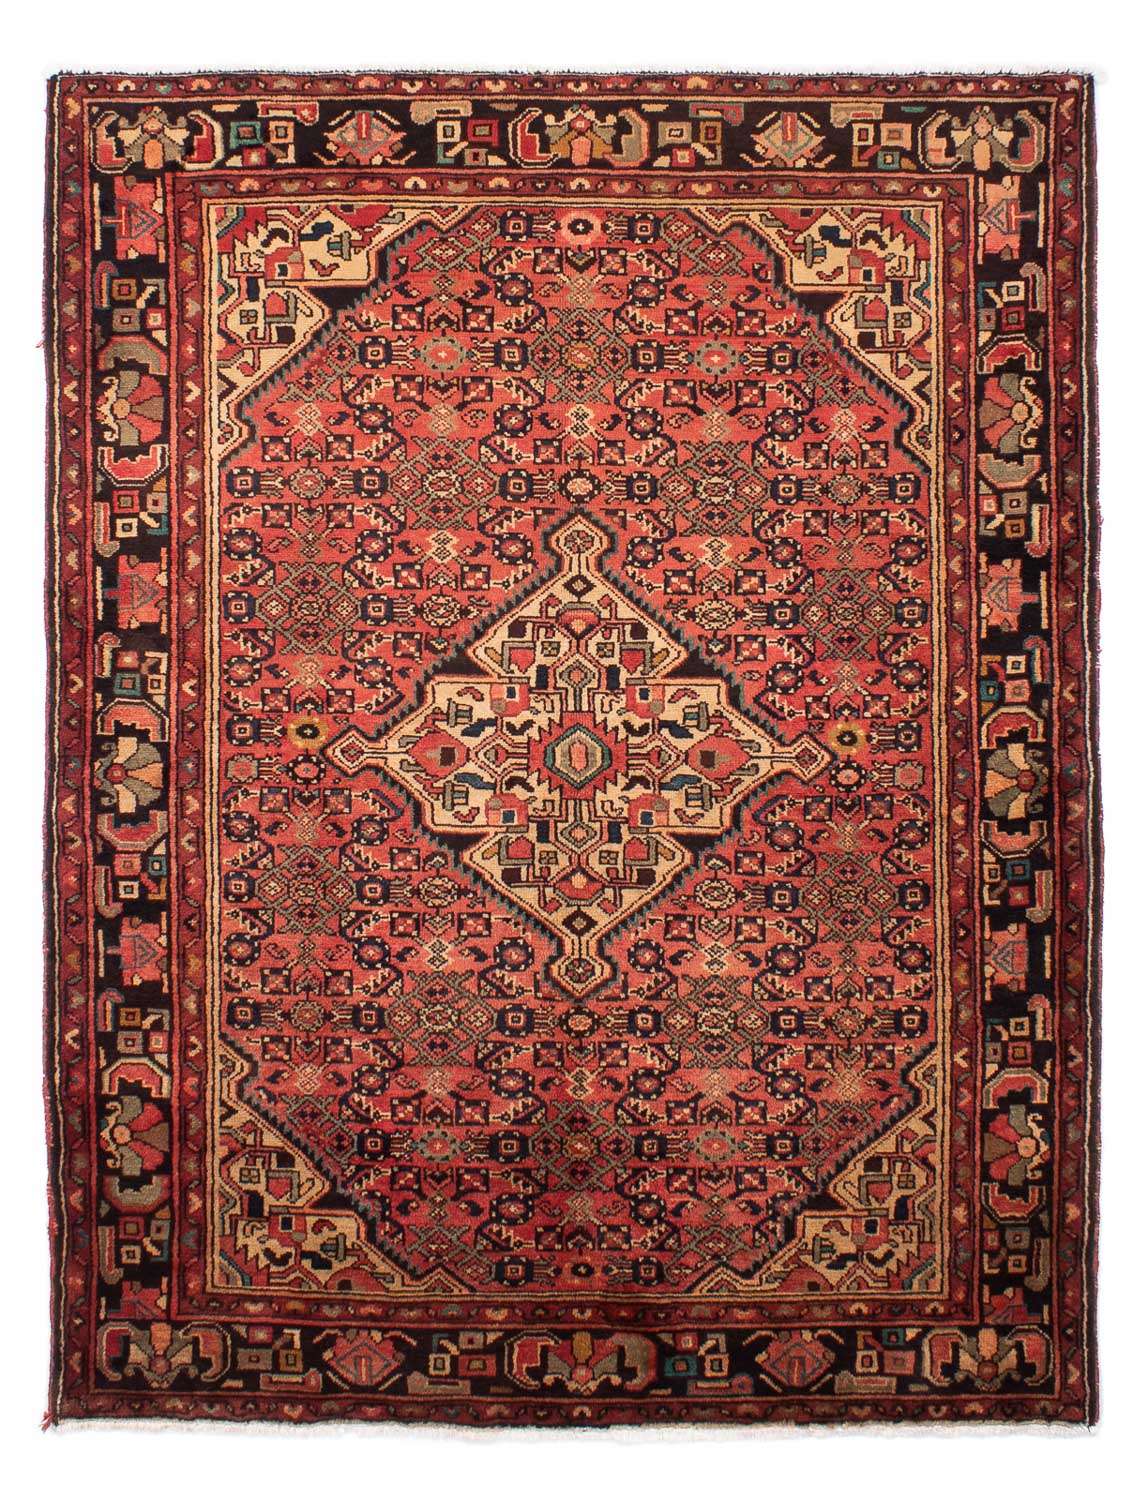 Persisk teppe - Nomadisk - 216 x 163 cm - lys rød